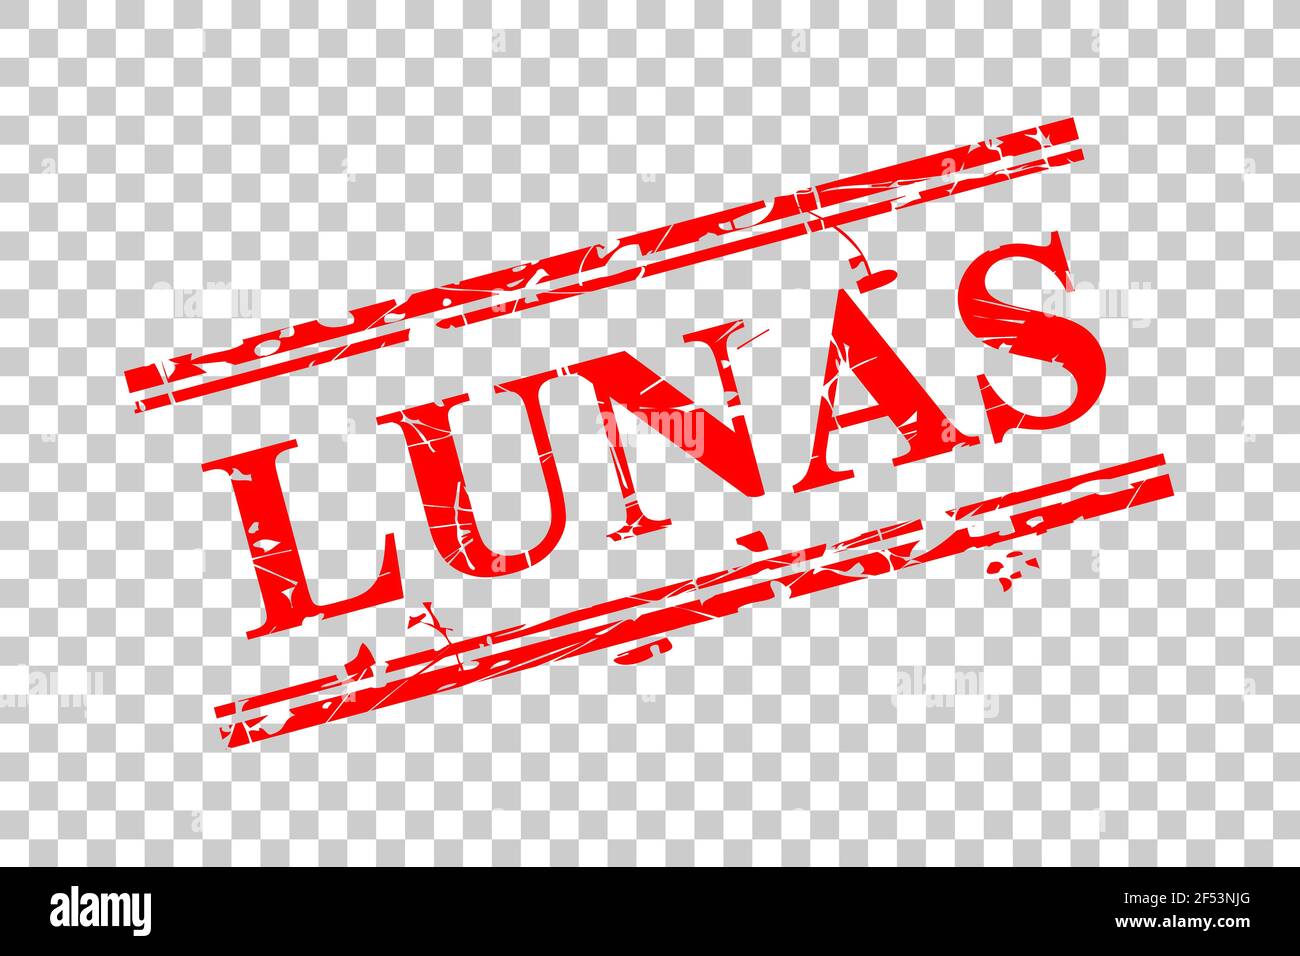 Stil von Gummistempel, Lunas, bezahlt in Indonesien Sprache, bei transparentem Effekt Hintergrund Stock Vektor